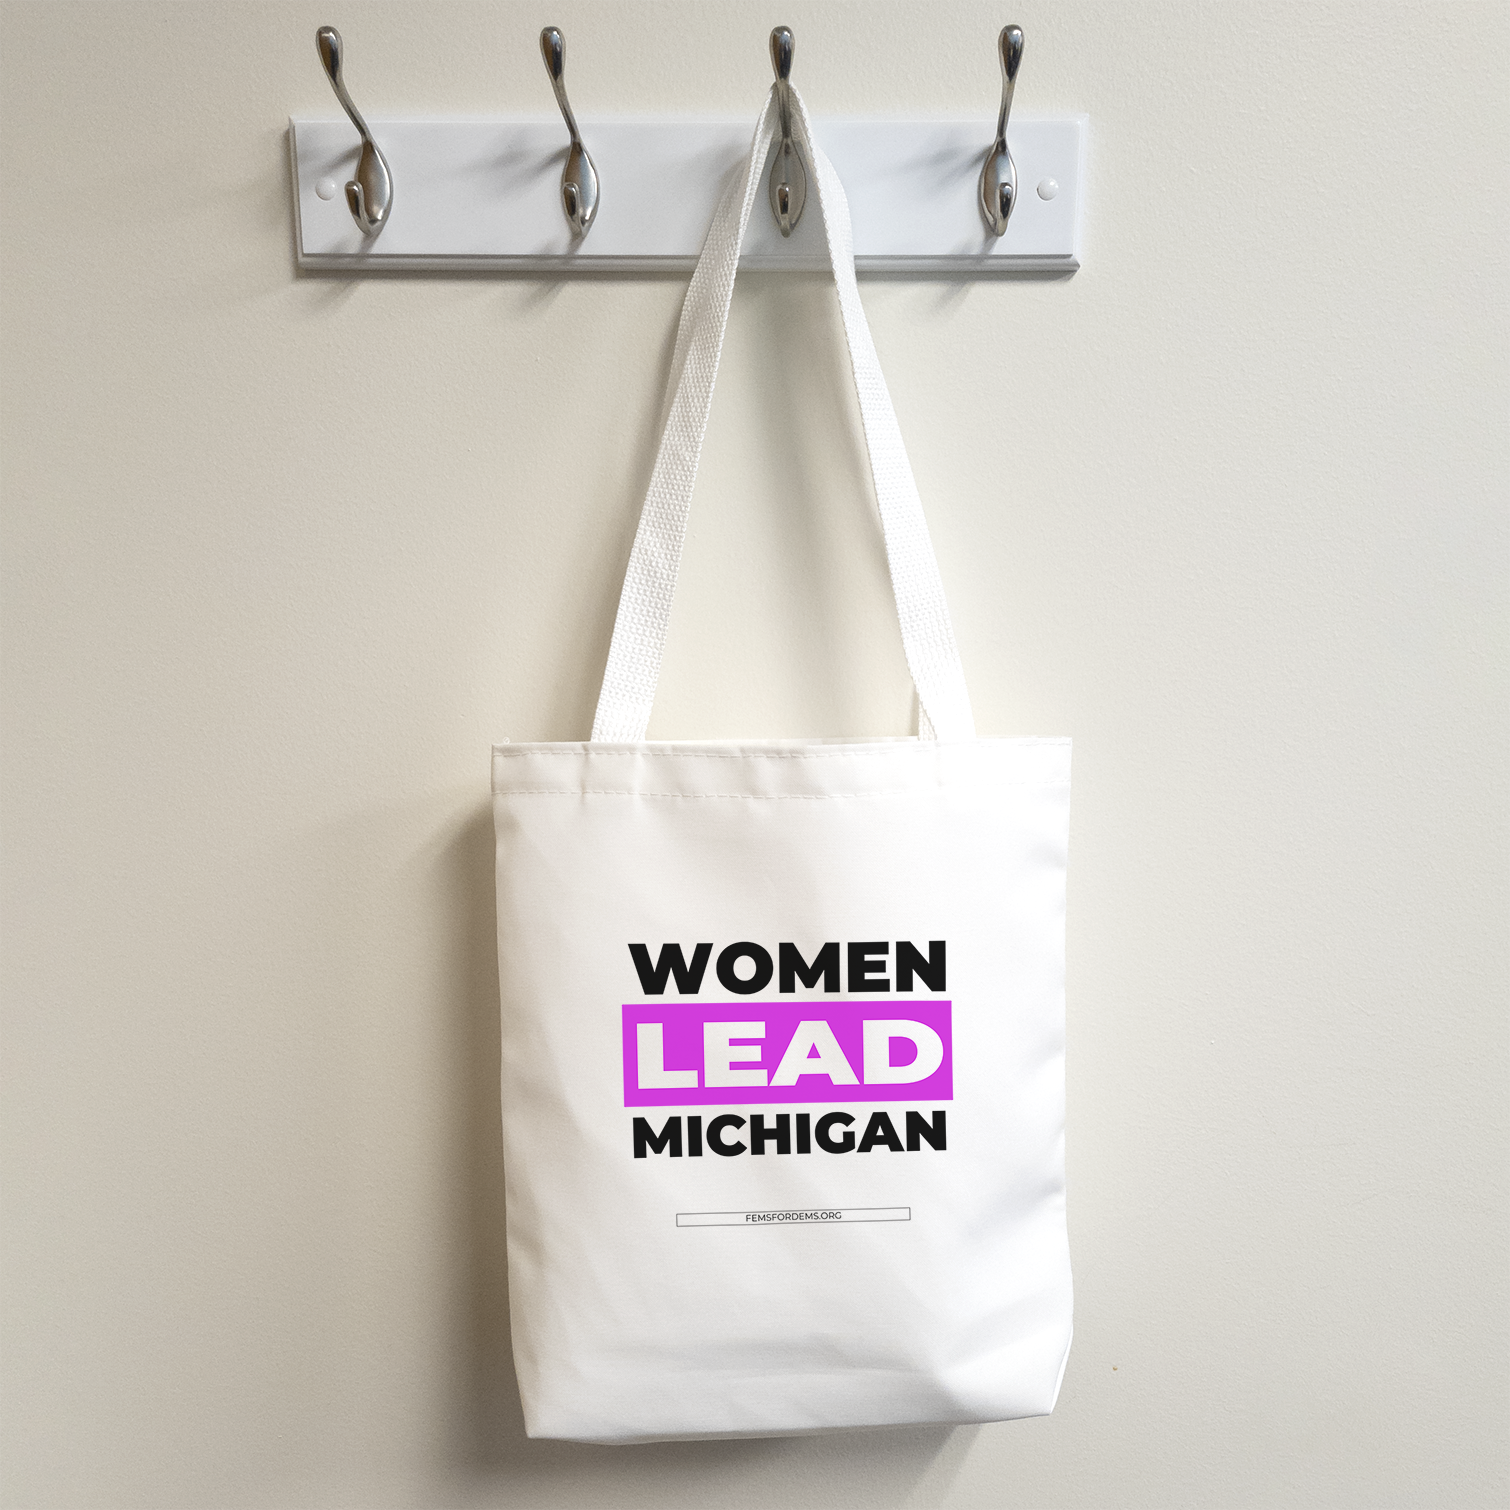 Women Lead Michigan tote